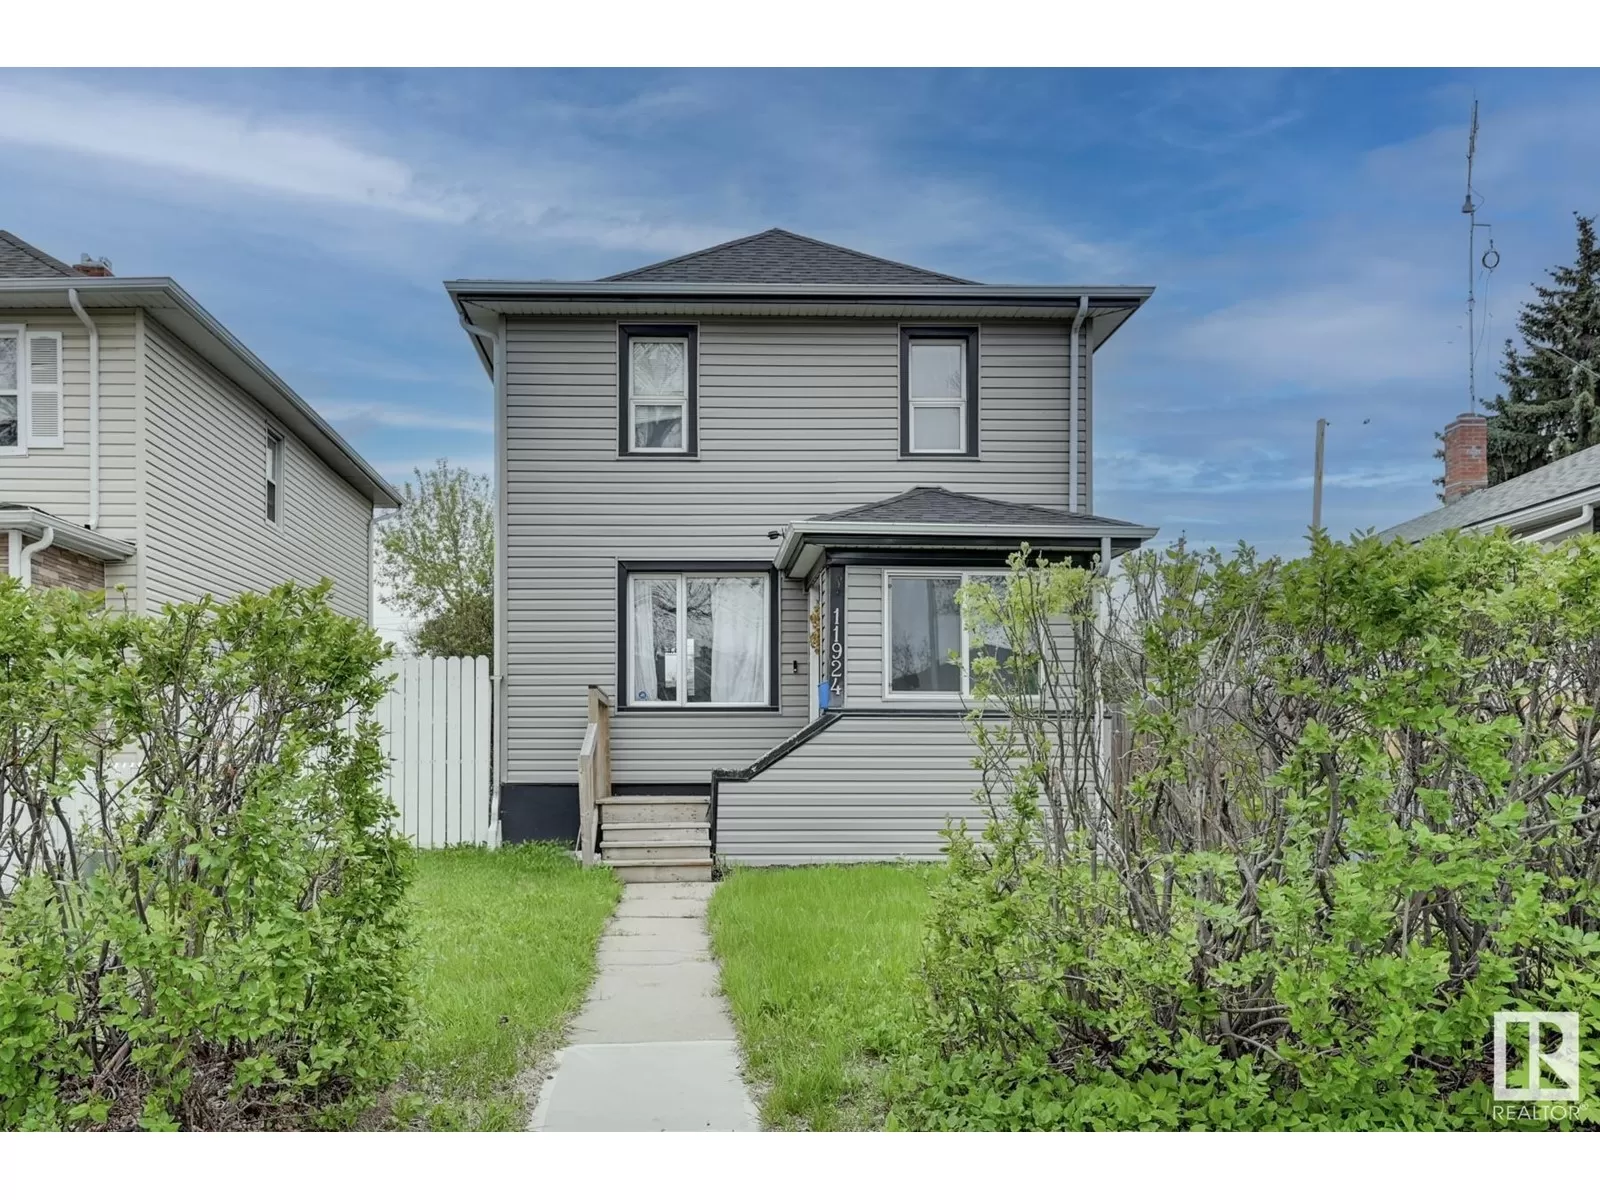 House for rent: 11924 89 St Nw, Edmonton, Alberta T5B 3V8